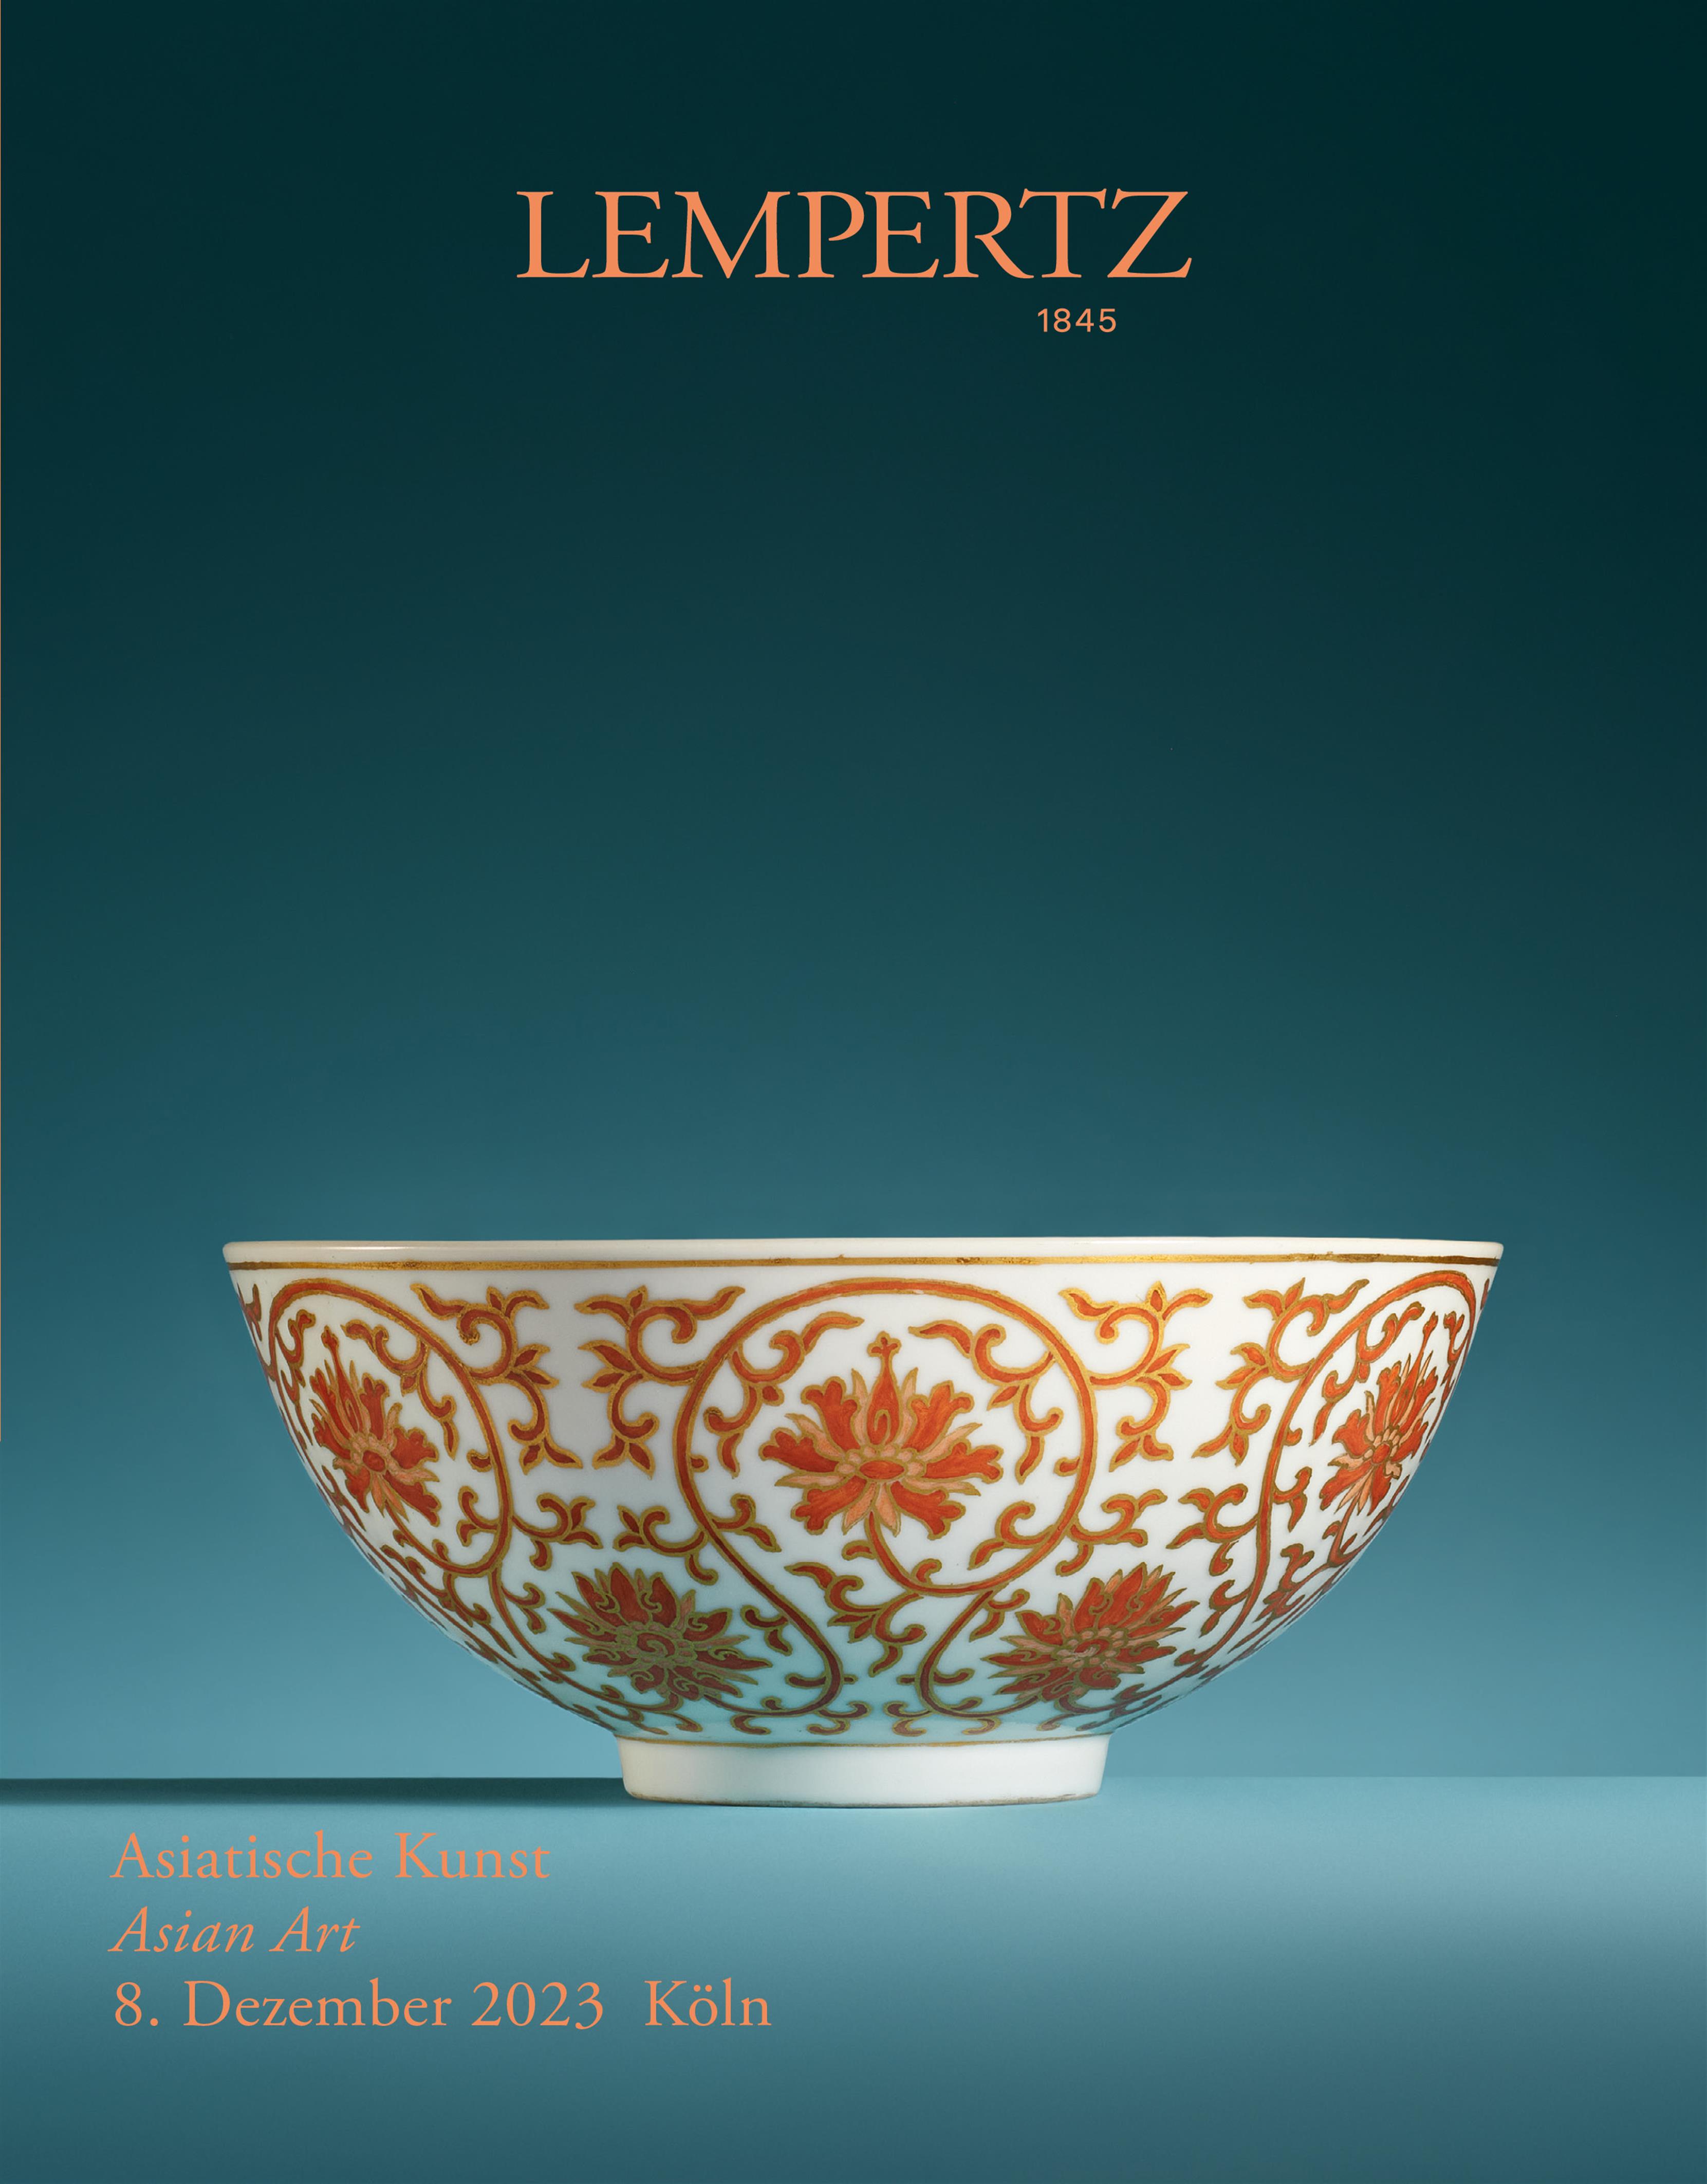 Catalogue - Asian Art - Online Catalogue - Auction 1235 – Purchase valuable works of art at the next Lempertz-Auction!